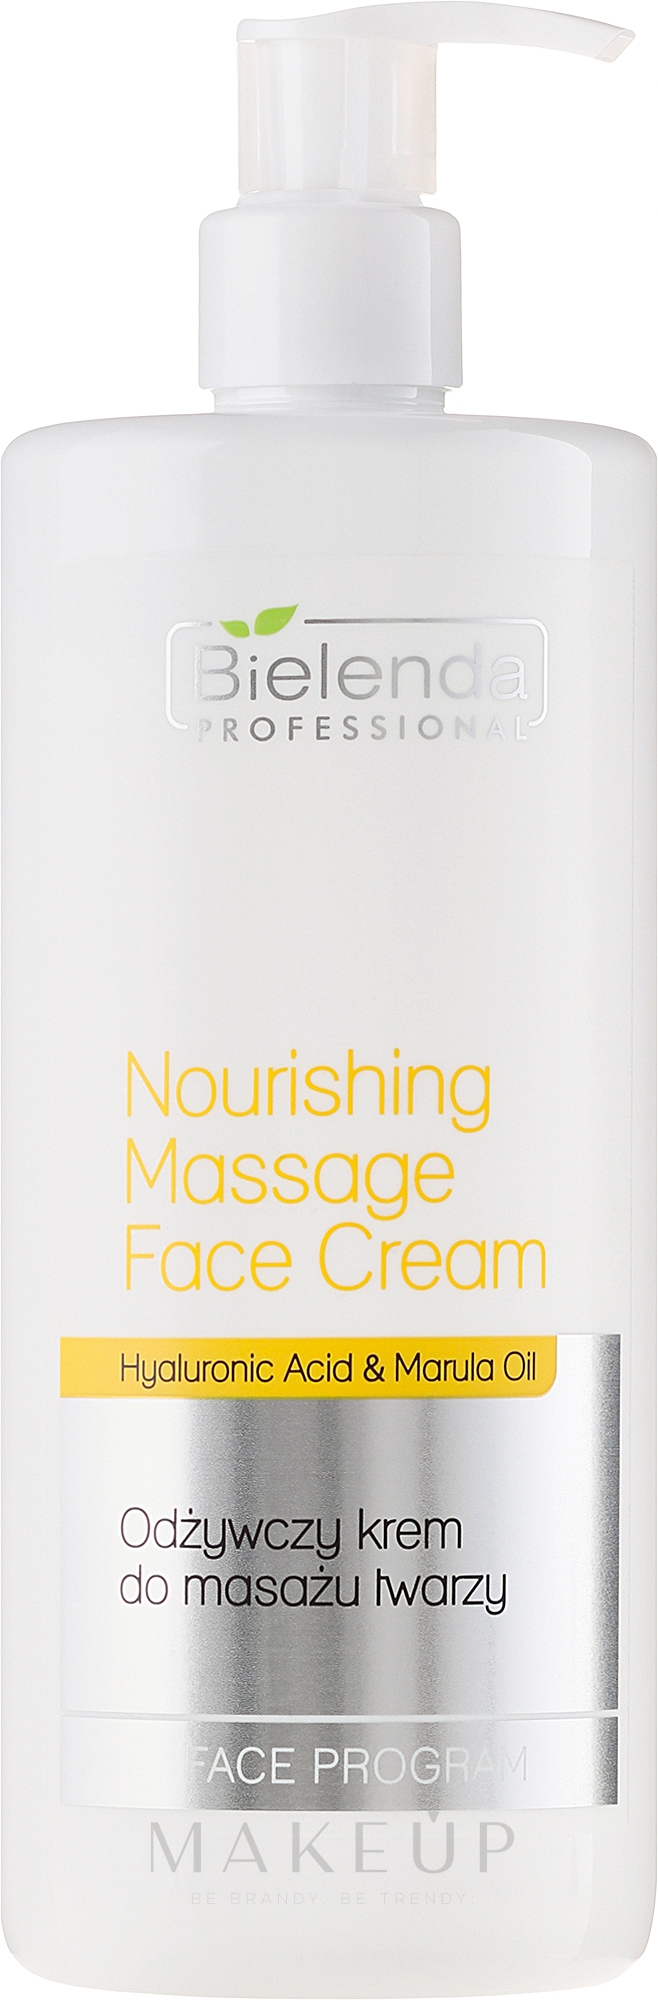 Pflegende Massagecreme für Gesicht mit Hyaluronsäure und Marulaöl - Bielenda Professional Face Program Nourishing Massage Face Cream — Bild 500 ml